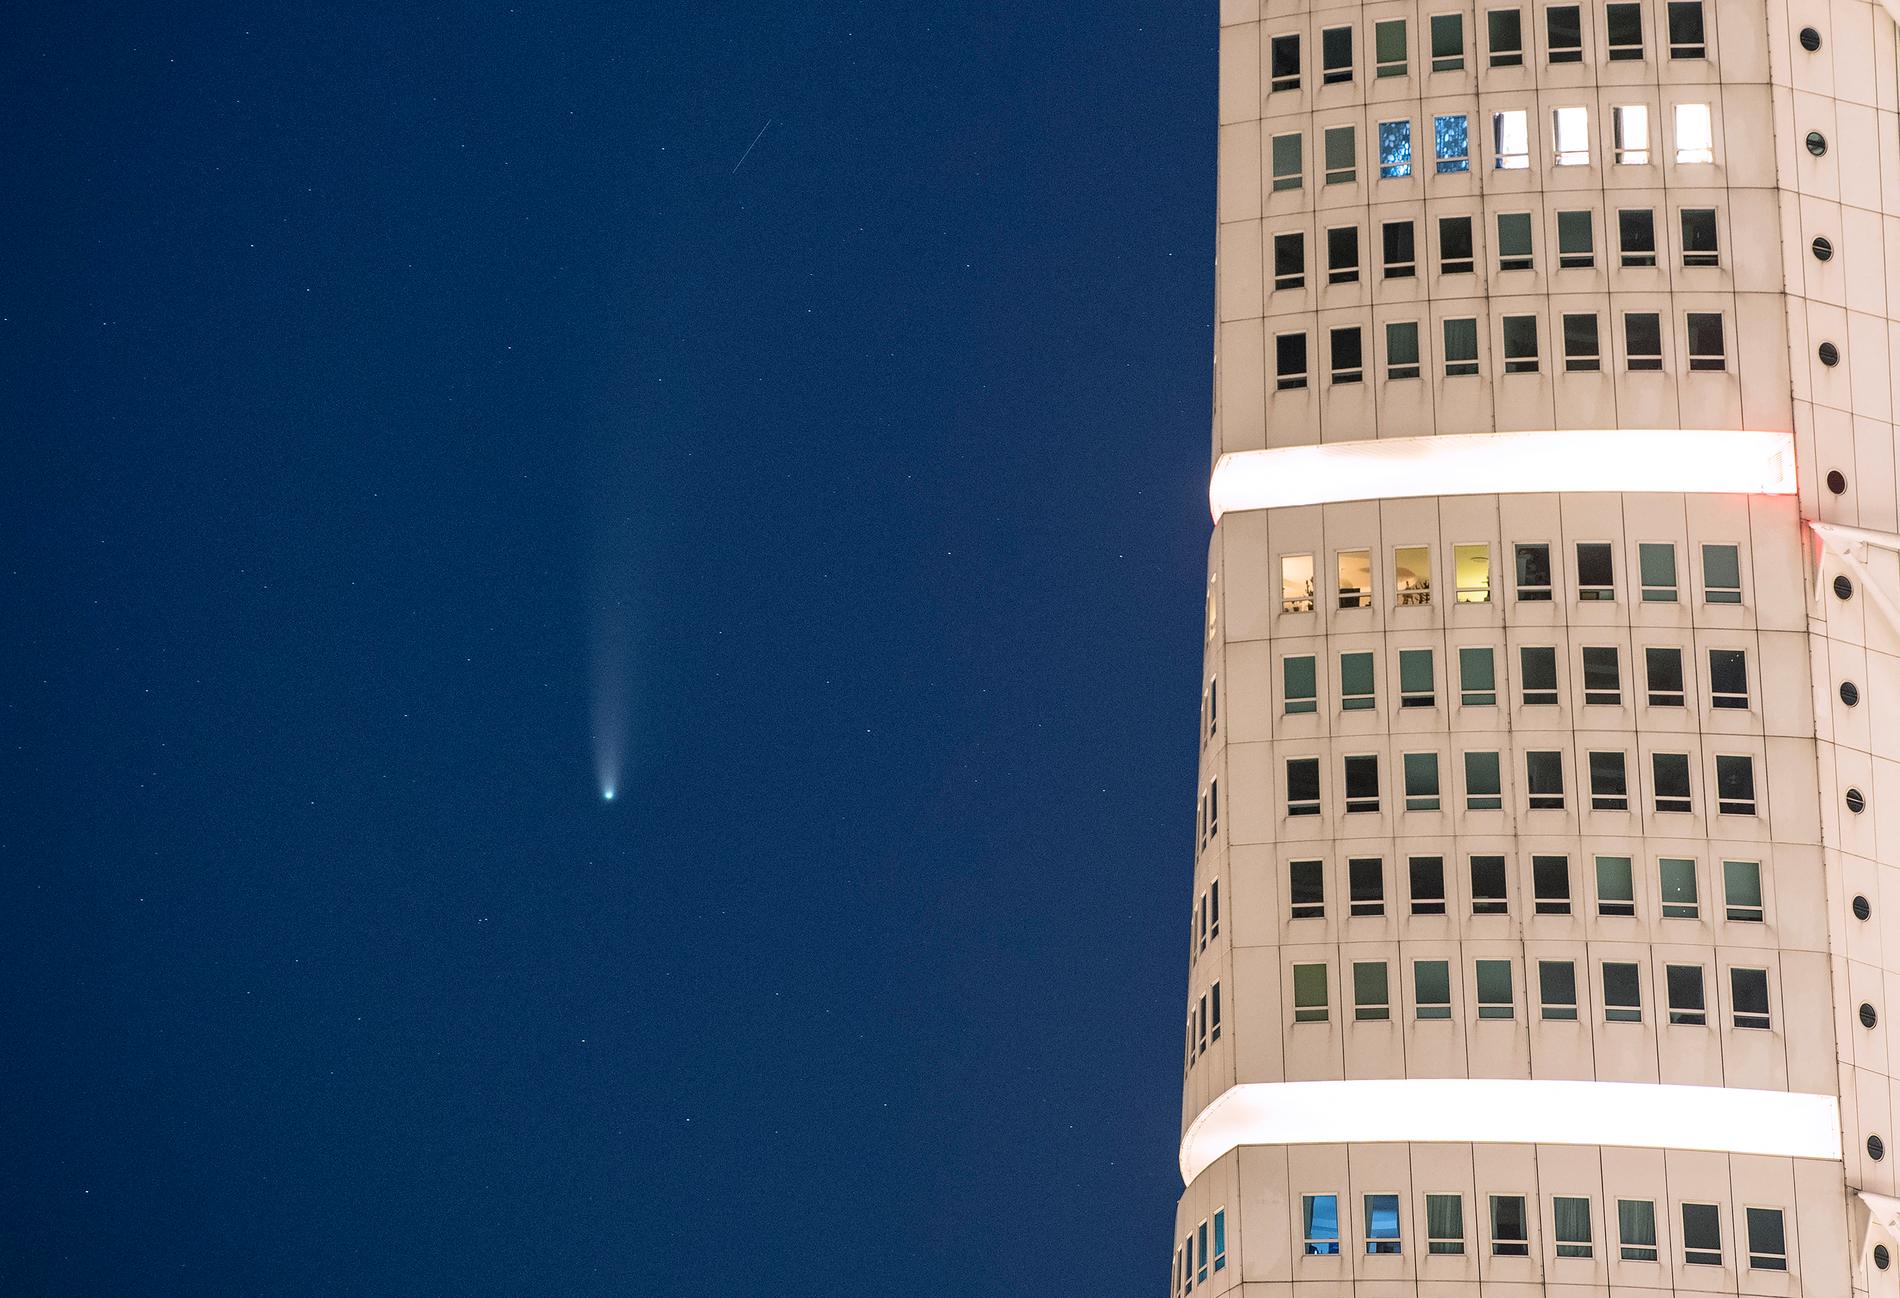 Kometen Neowise på natthimlen bredvid Turning Torso i Malmö natten till fredagen.